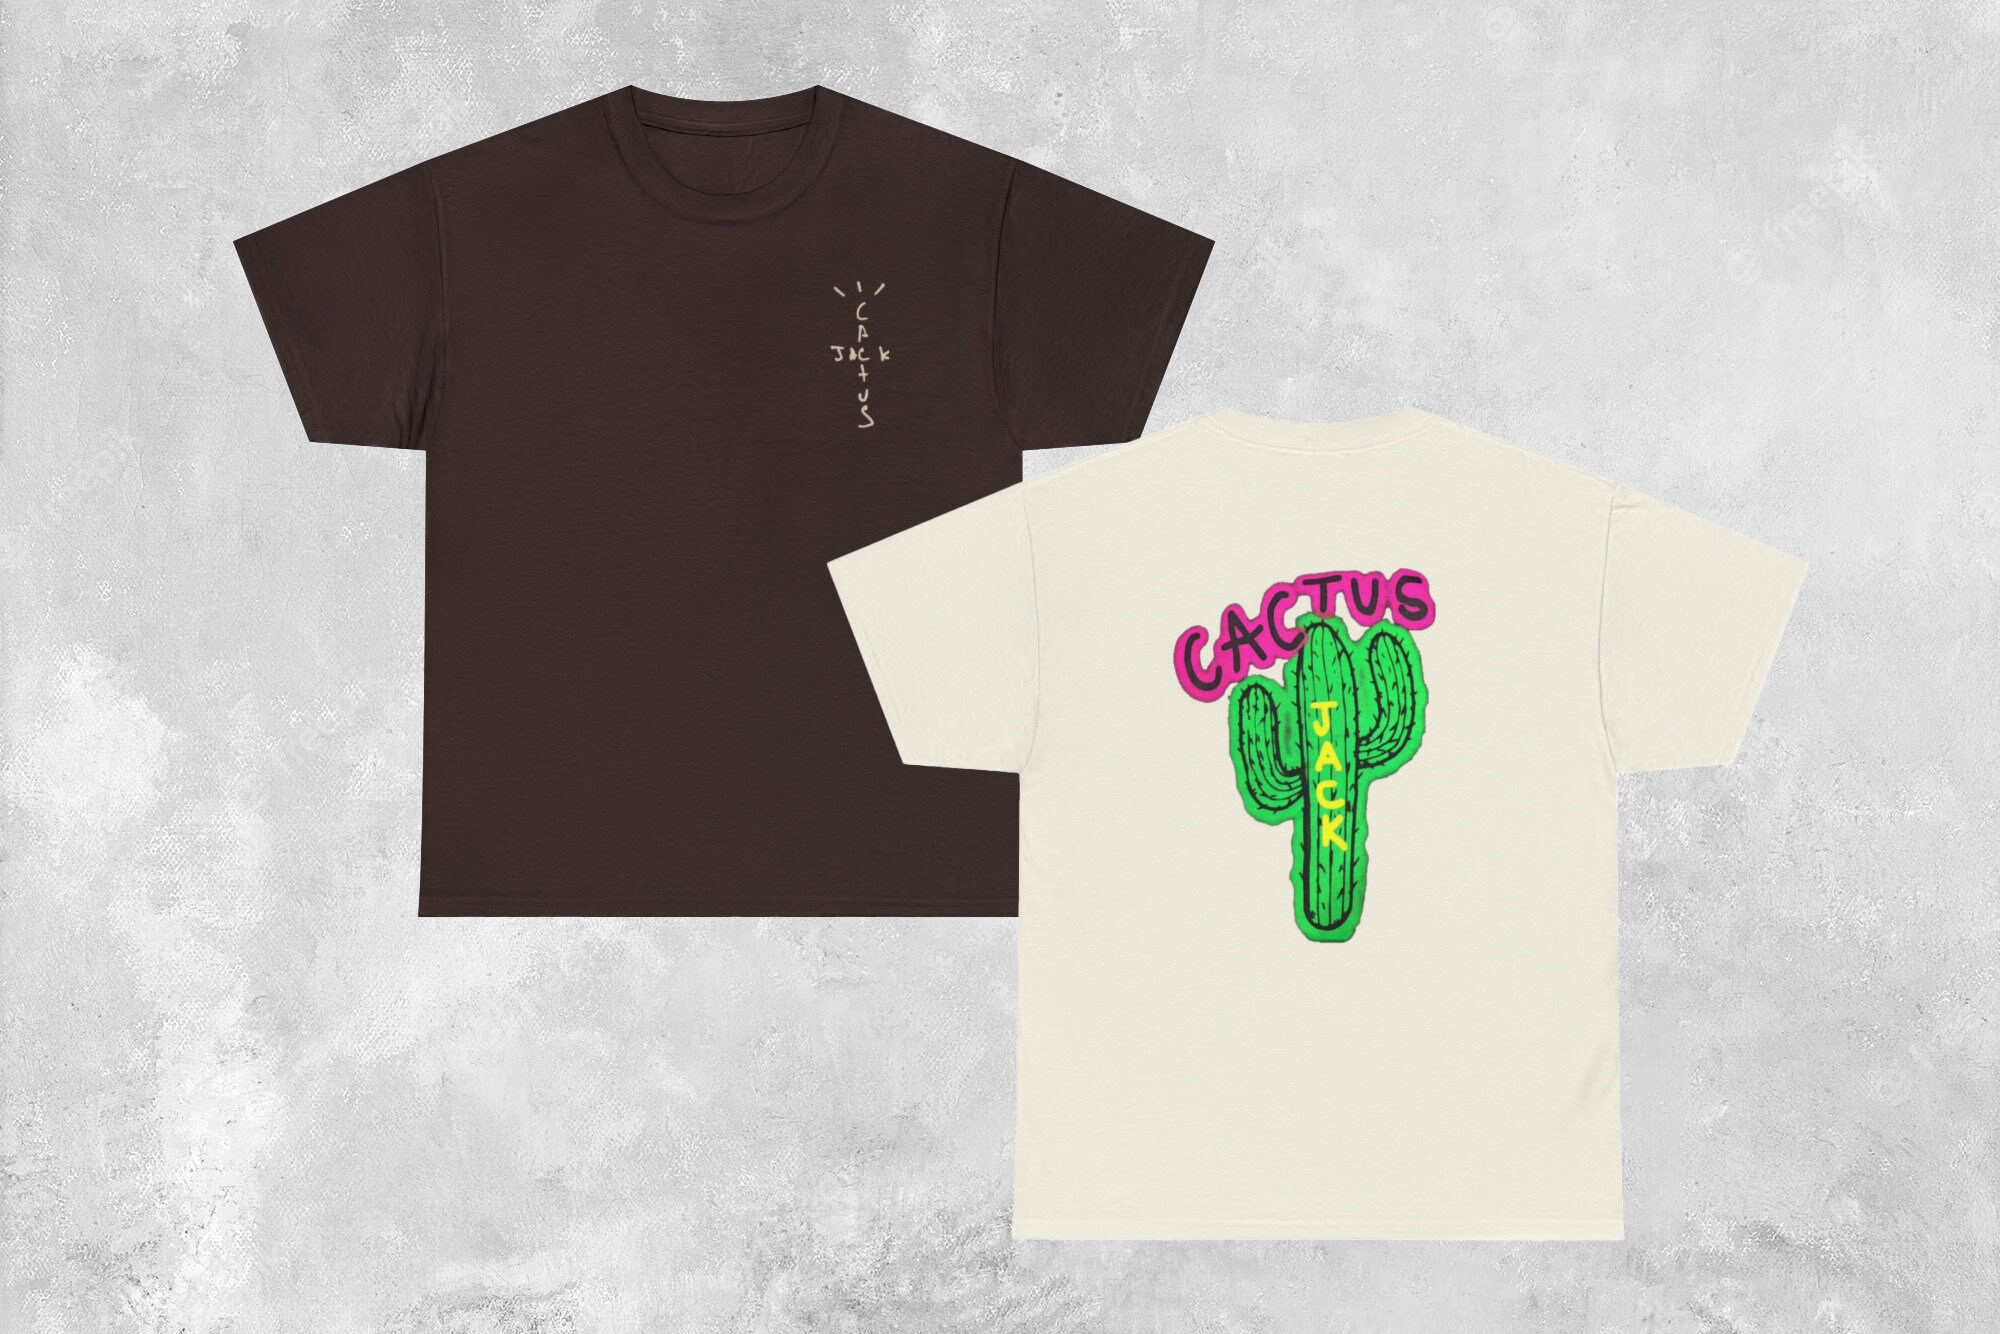 Cactus Jack Luxury Men Cotton Hip Hop T Shirt 